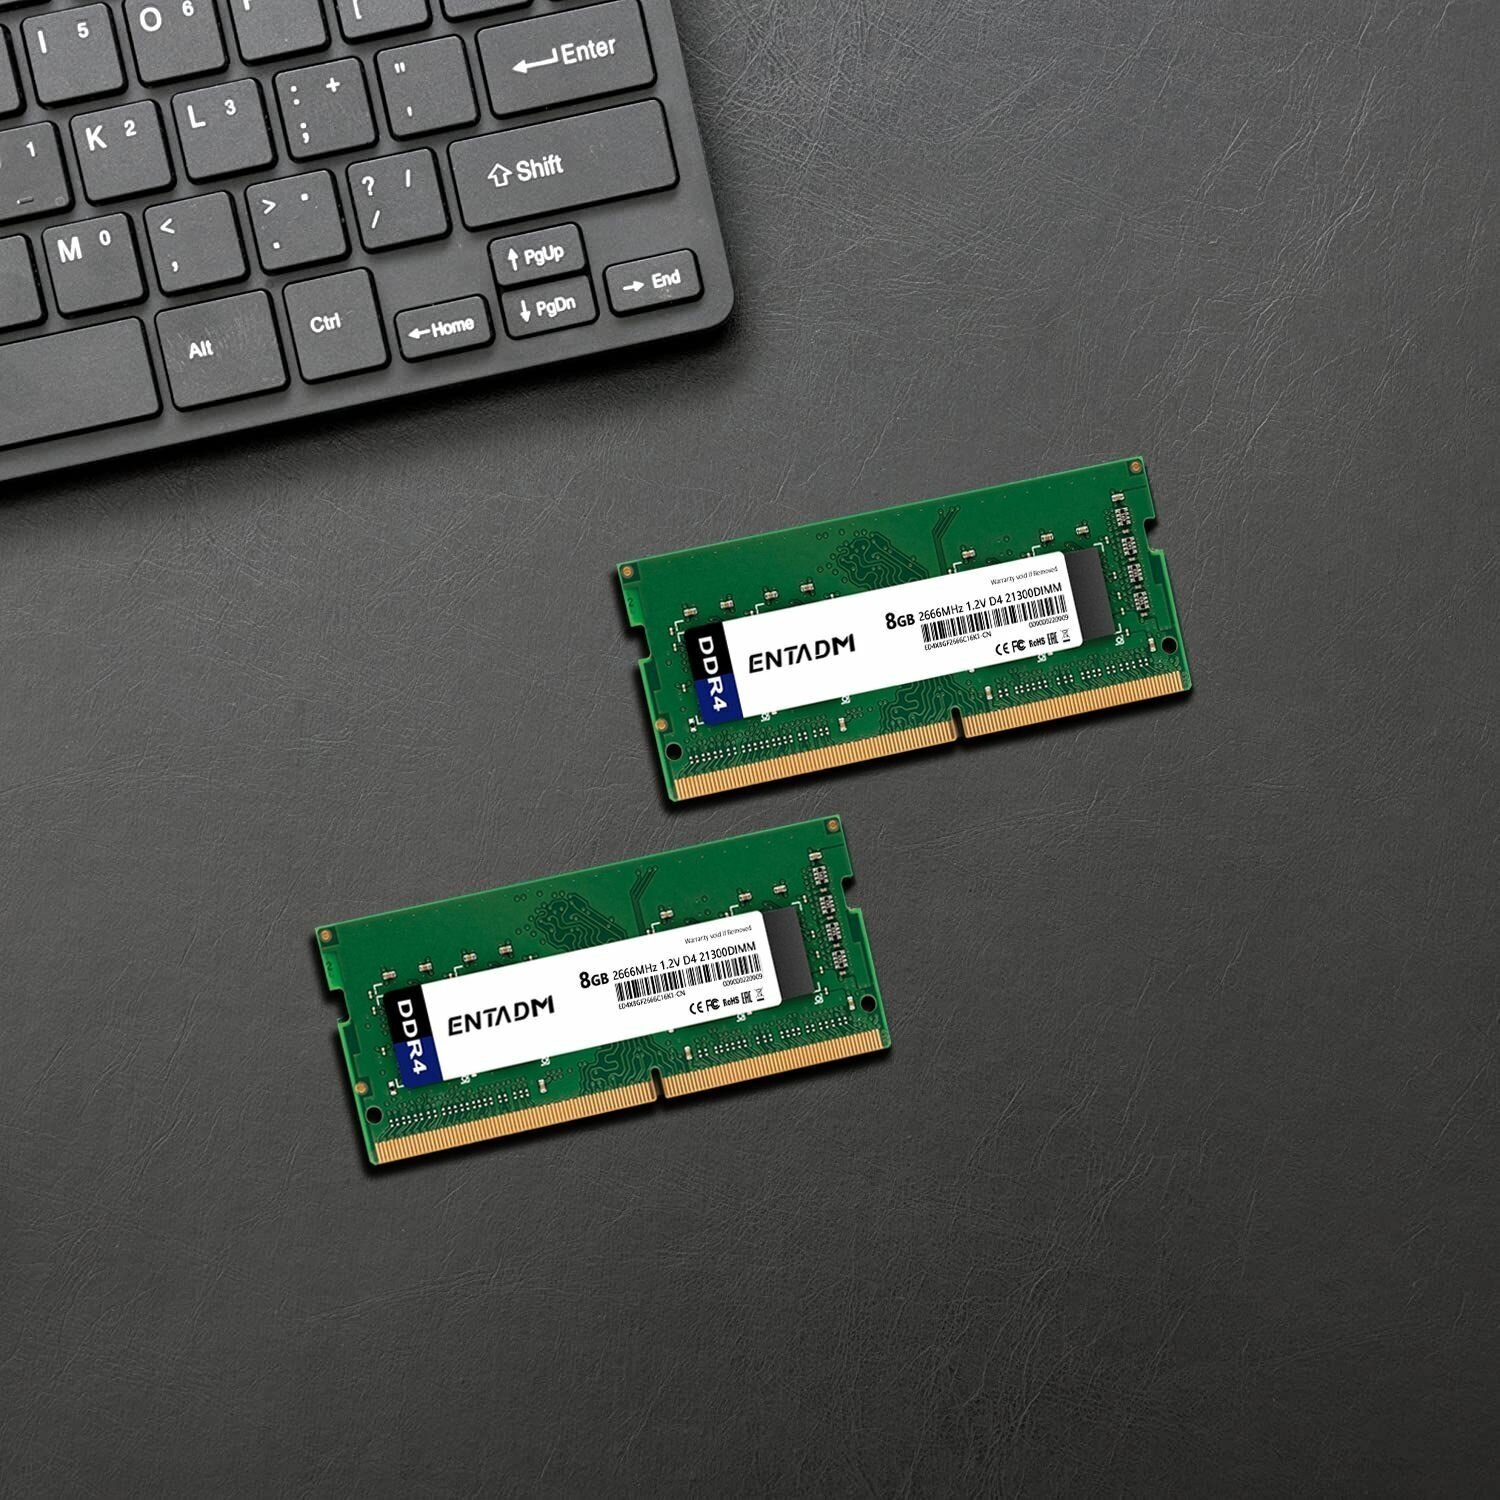 Оперативная память для ноутбука ENTADM DDR4 8ГБ 2666 МГц 12В